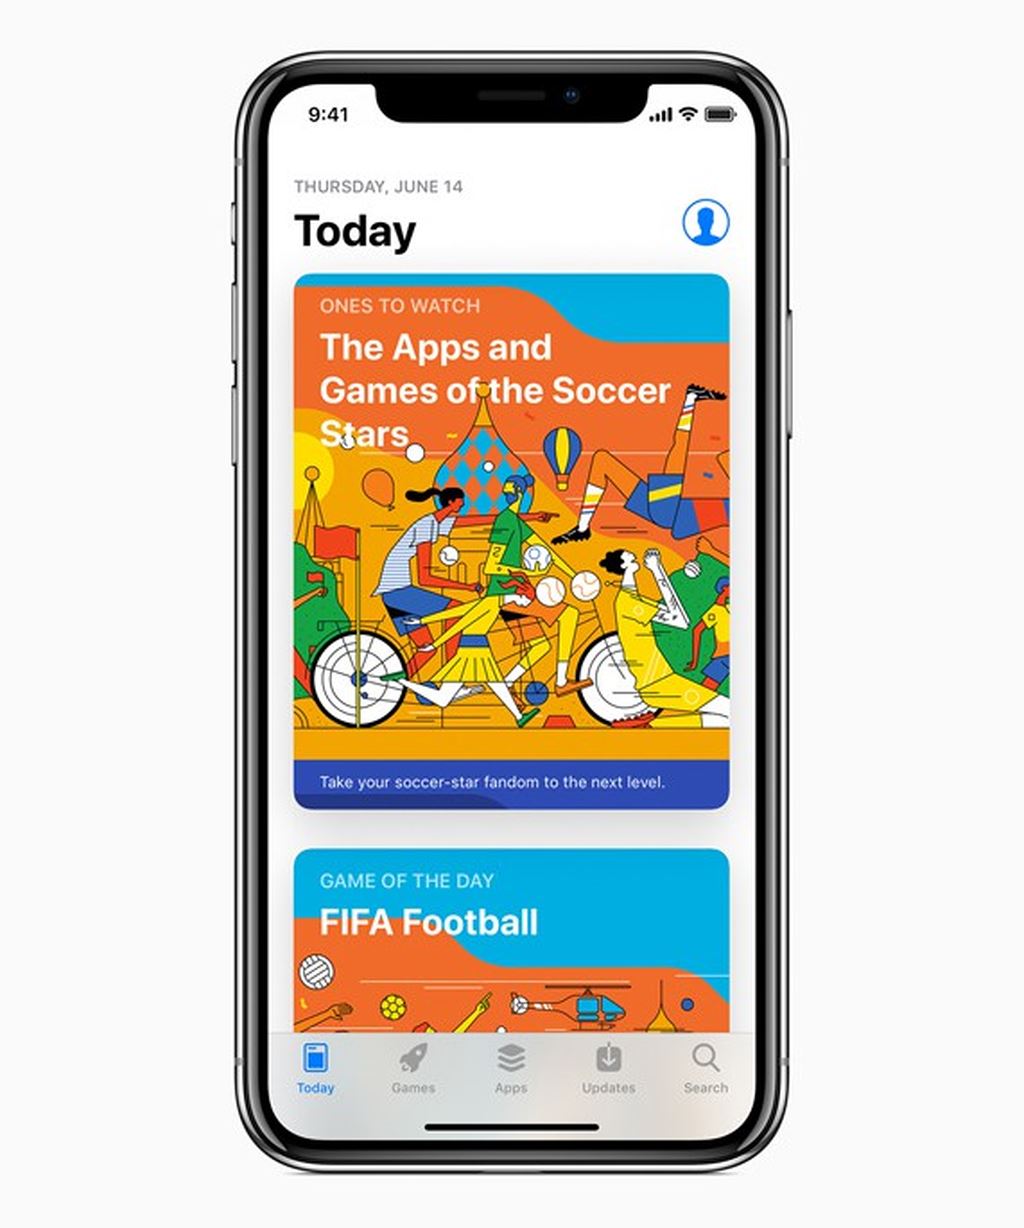 Apple nâng cấp Siri, Music, iBooks, App Store và News phục vụ World Cup 2018